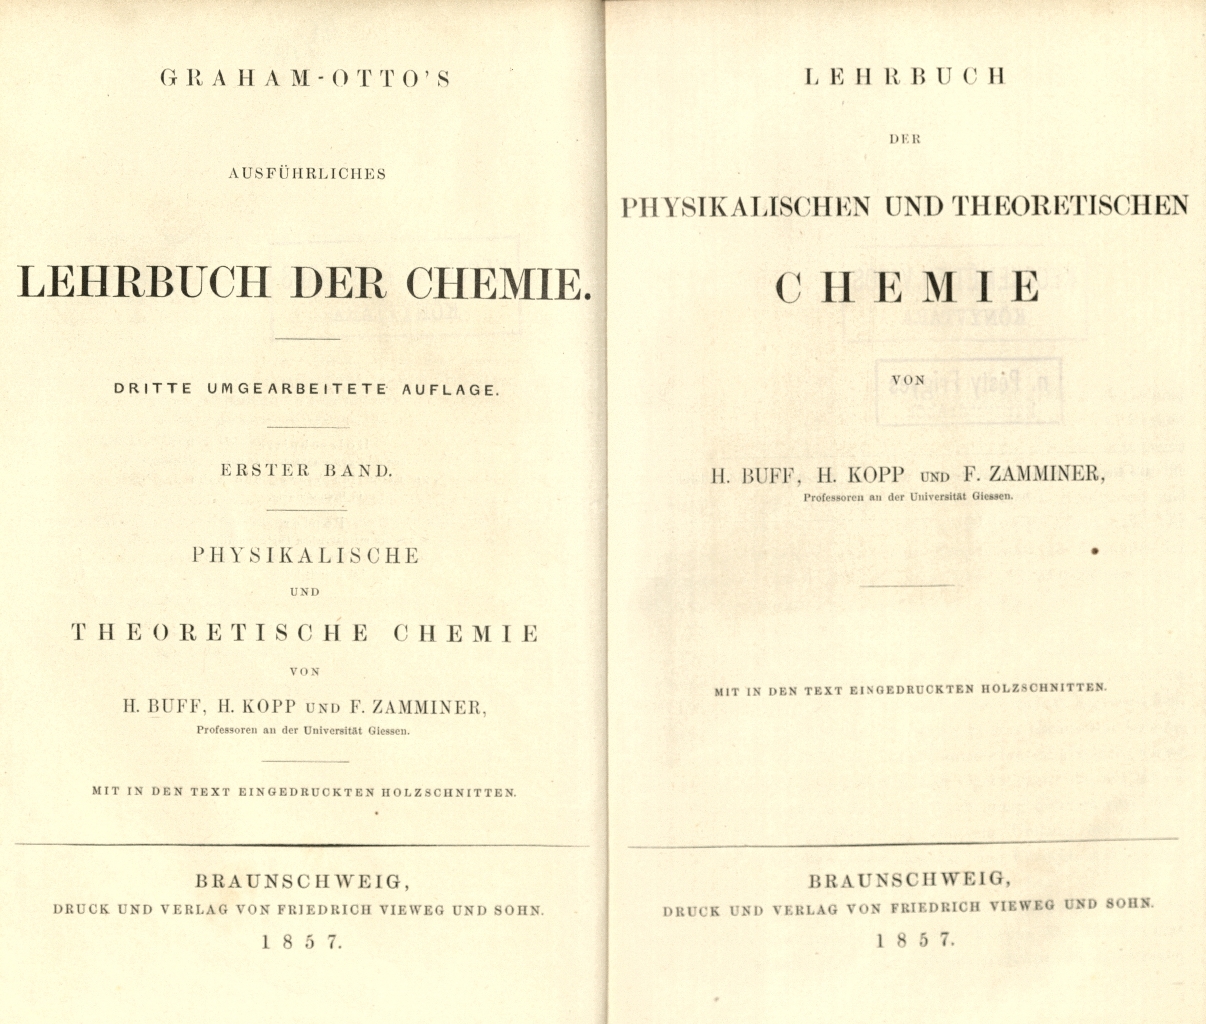 Graham, Otto: Ausführliches Lehrbuch der Chemie, 1857